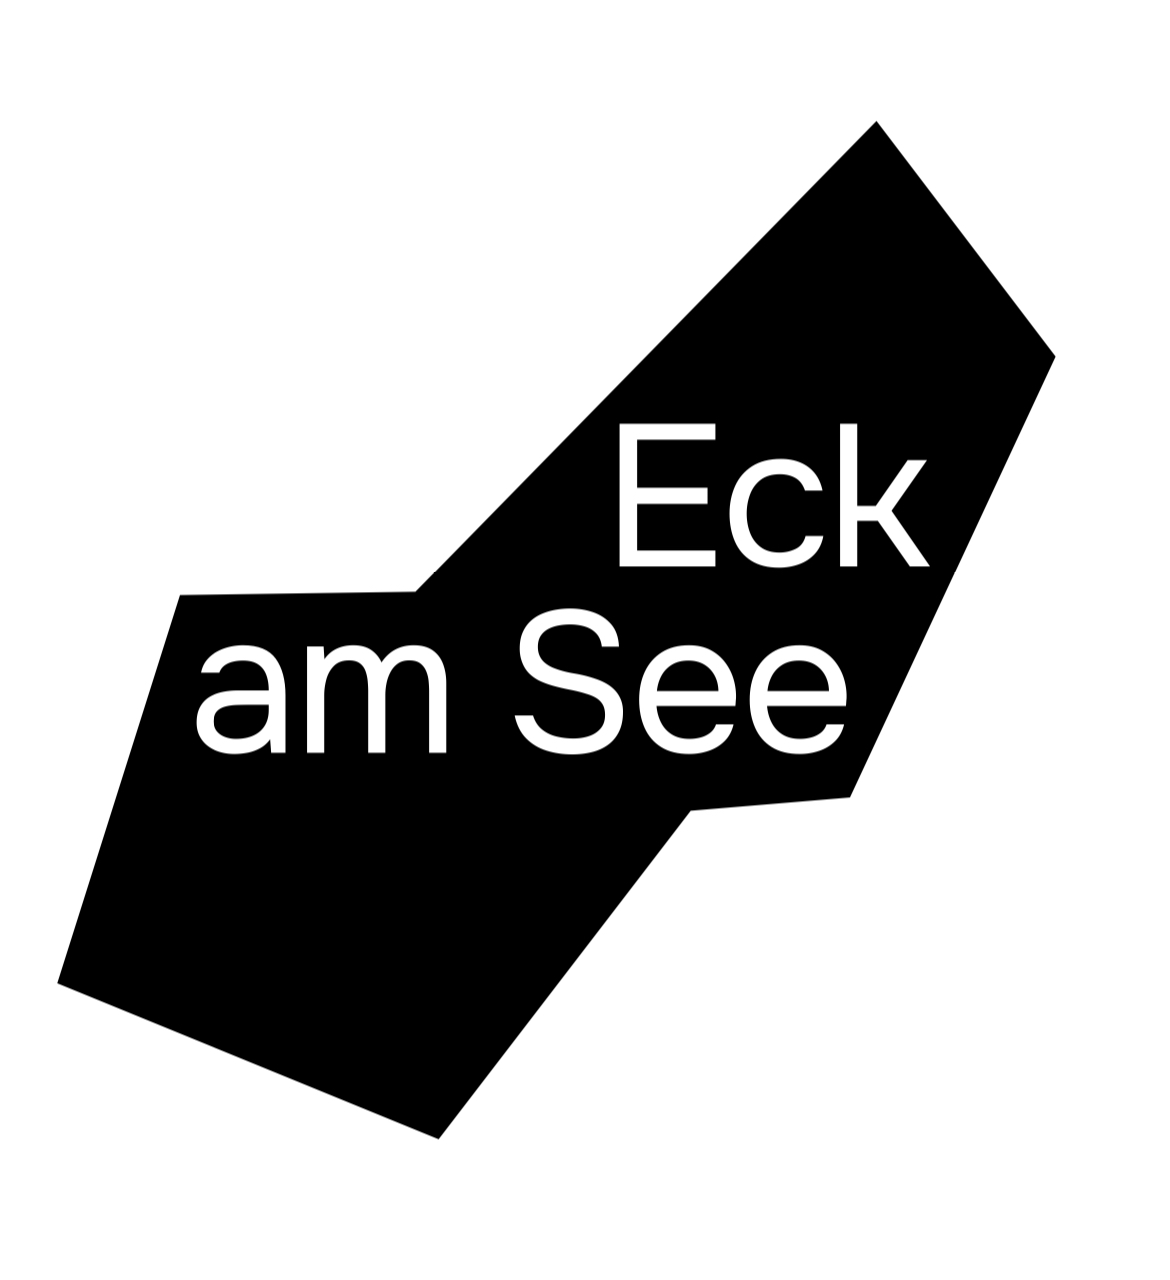 Das Logo von Eck am See zeigt die Silhouette des Eckensees und den Schriftzug "Eck am See"